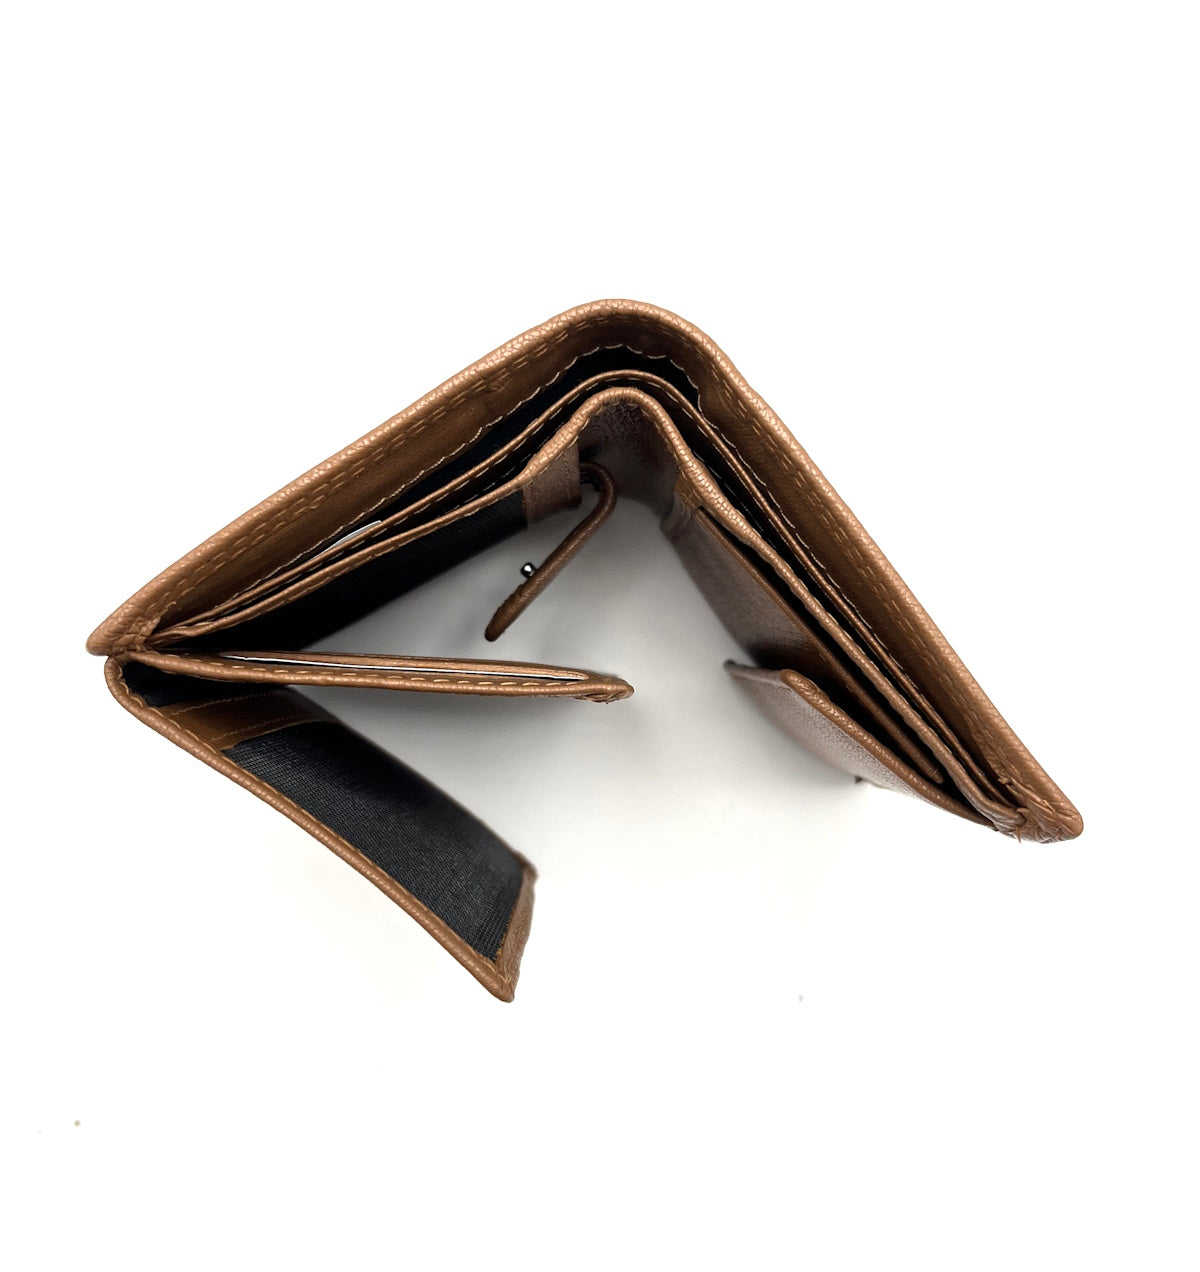 Genuine leather wallet, Brand GMV, art. GMV80-108